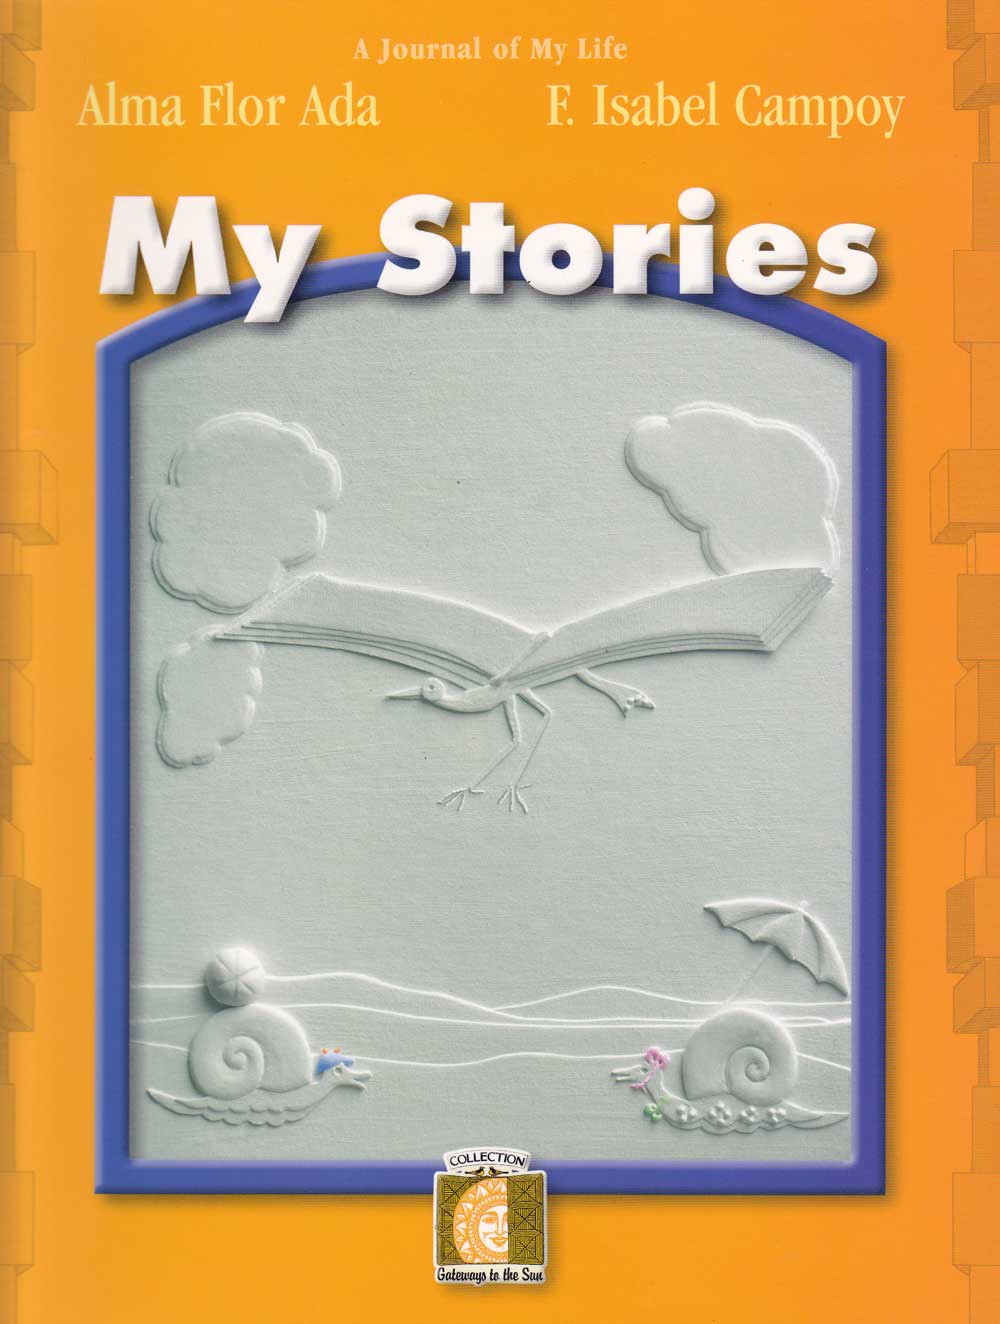 Mis relatos, My Stories, Del Sol Books